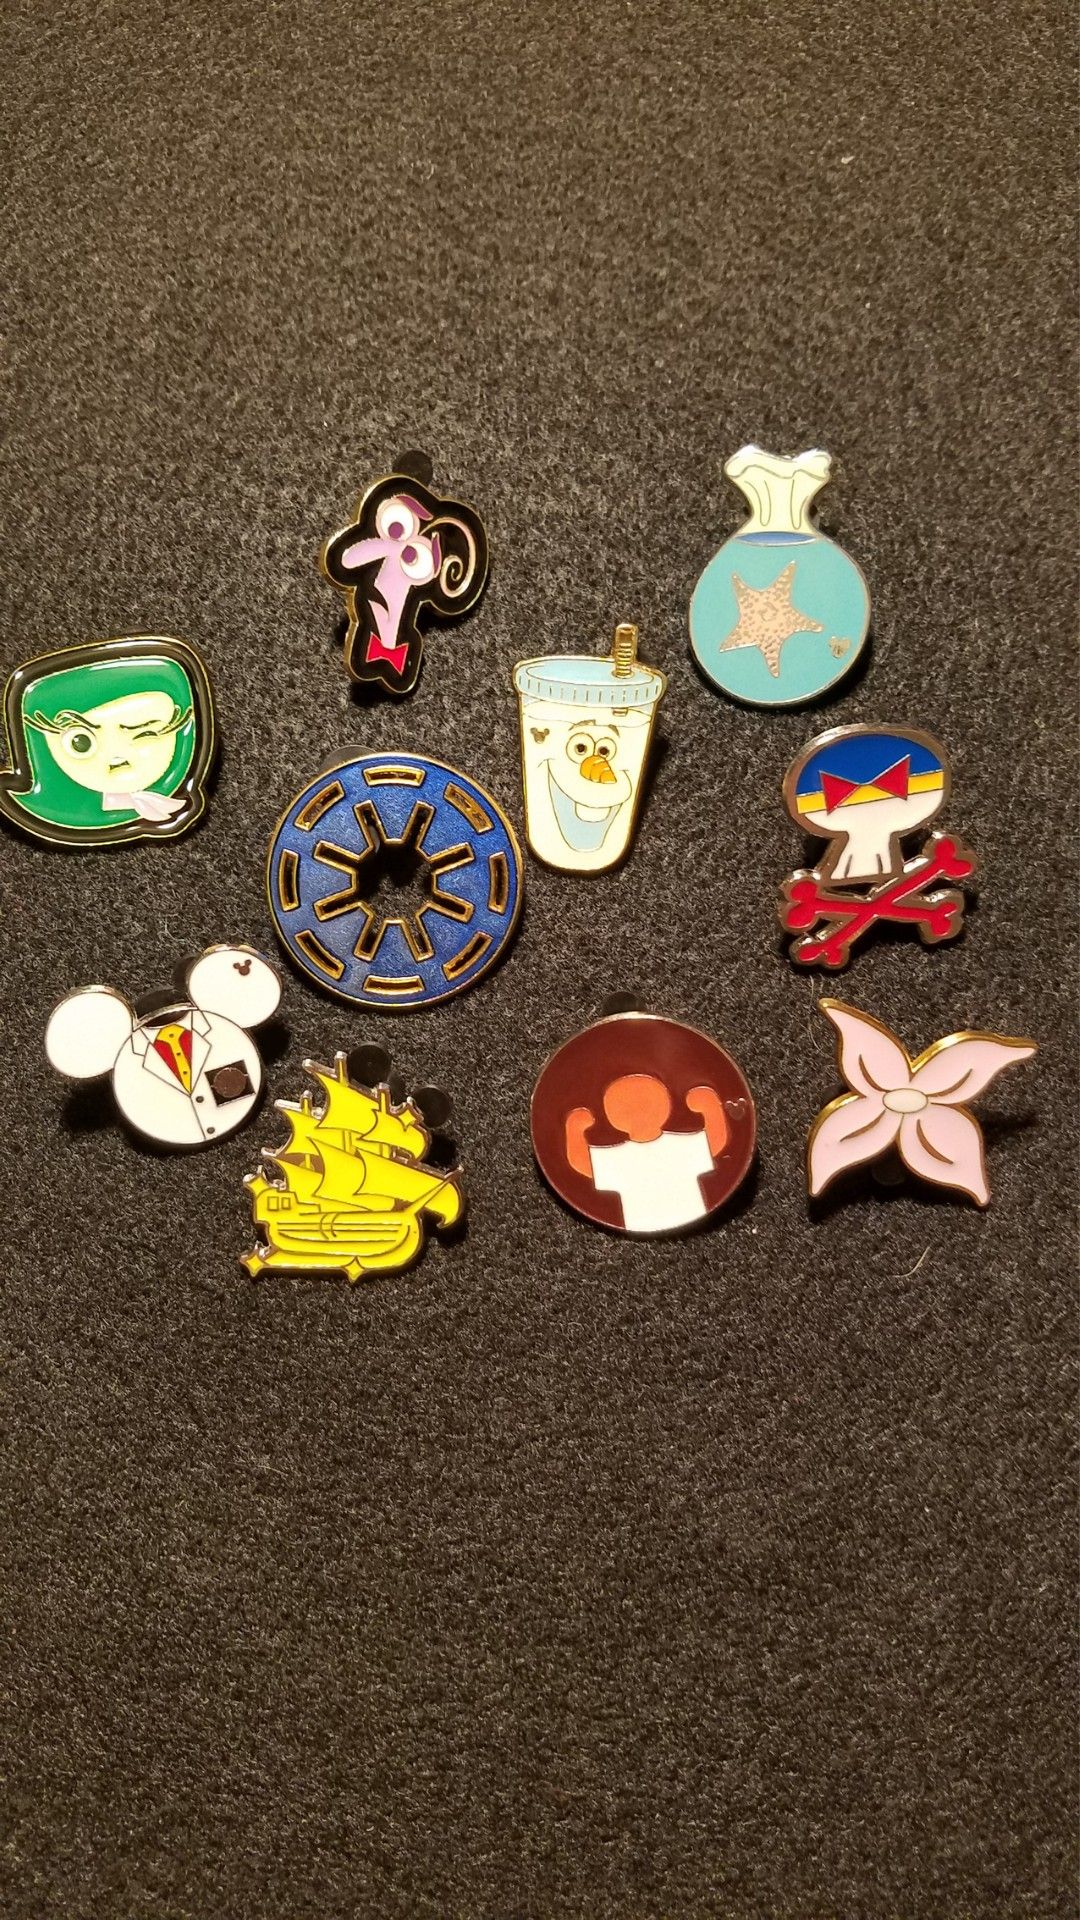 Lot of 10 Disney pins some hidden Mickeys